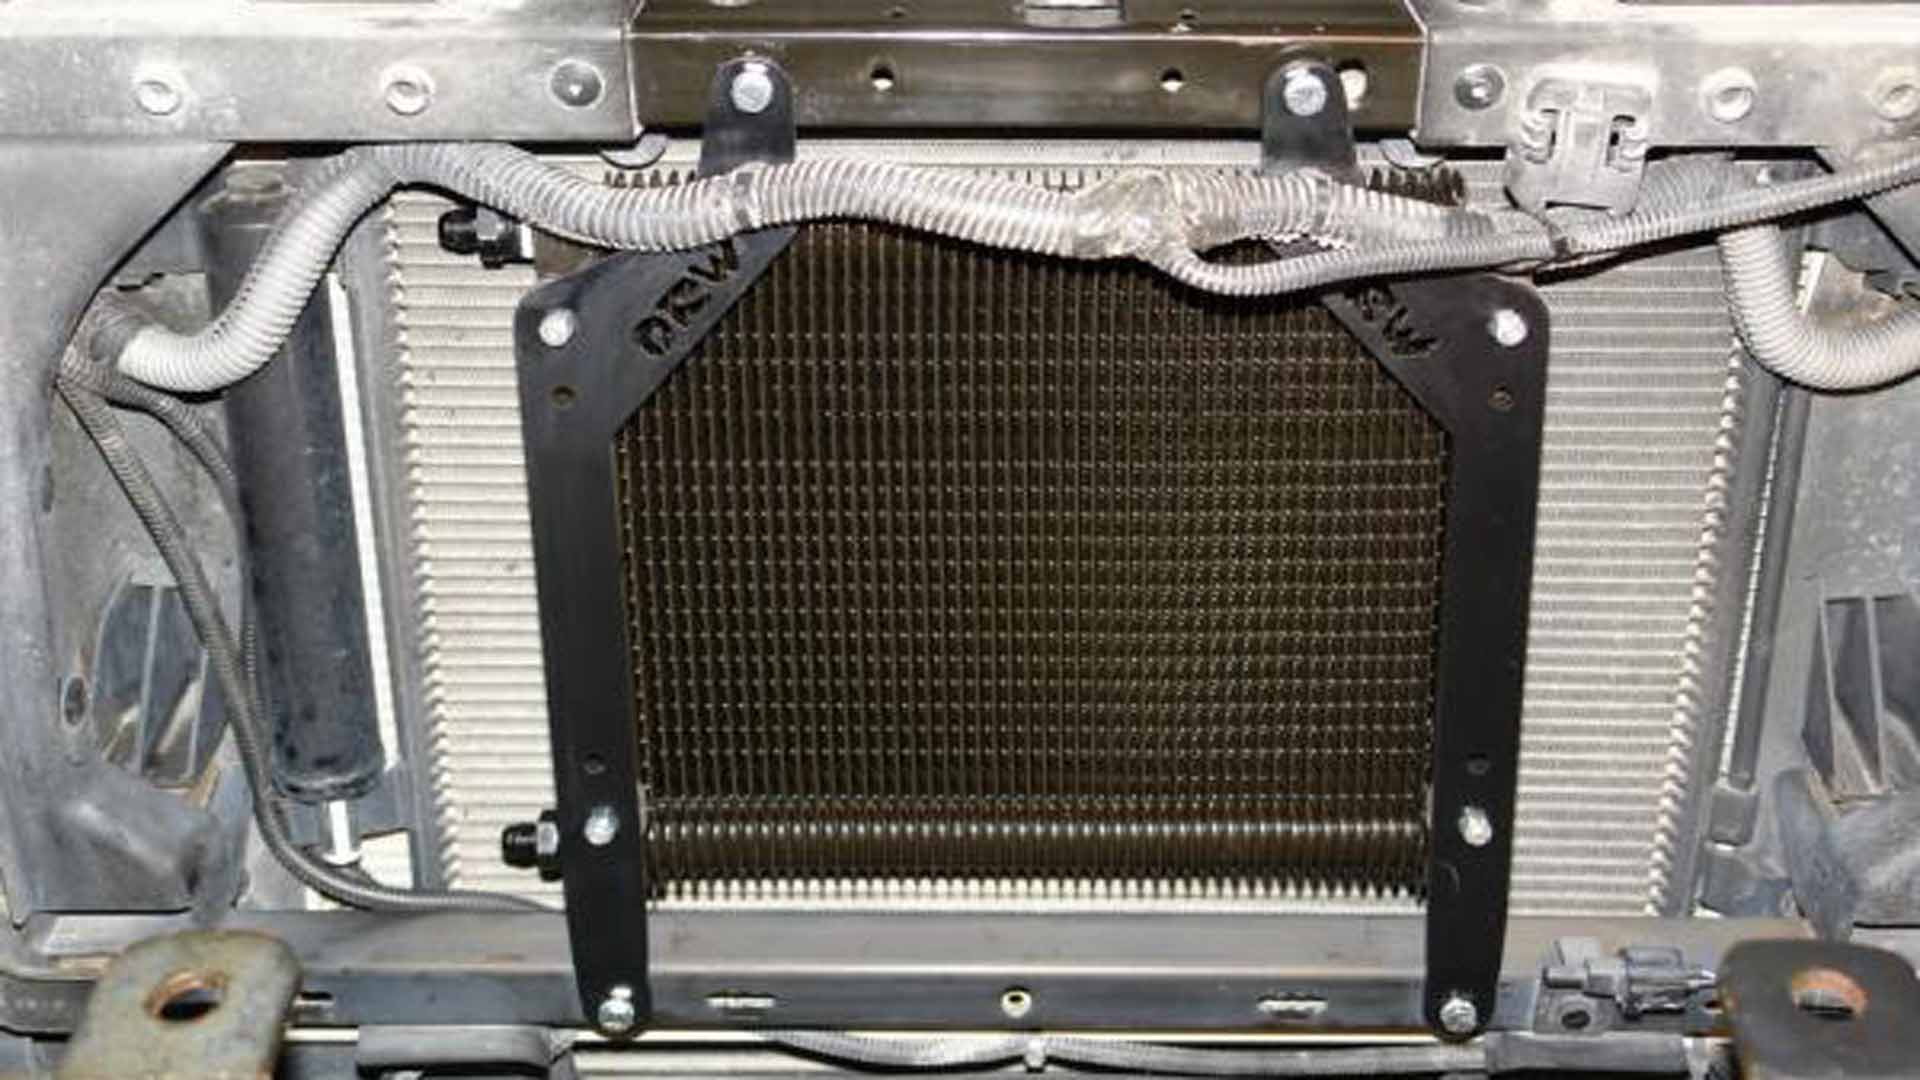 Jeep Wrangler JK: How to Install Transmission Cooler | Jk-forum